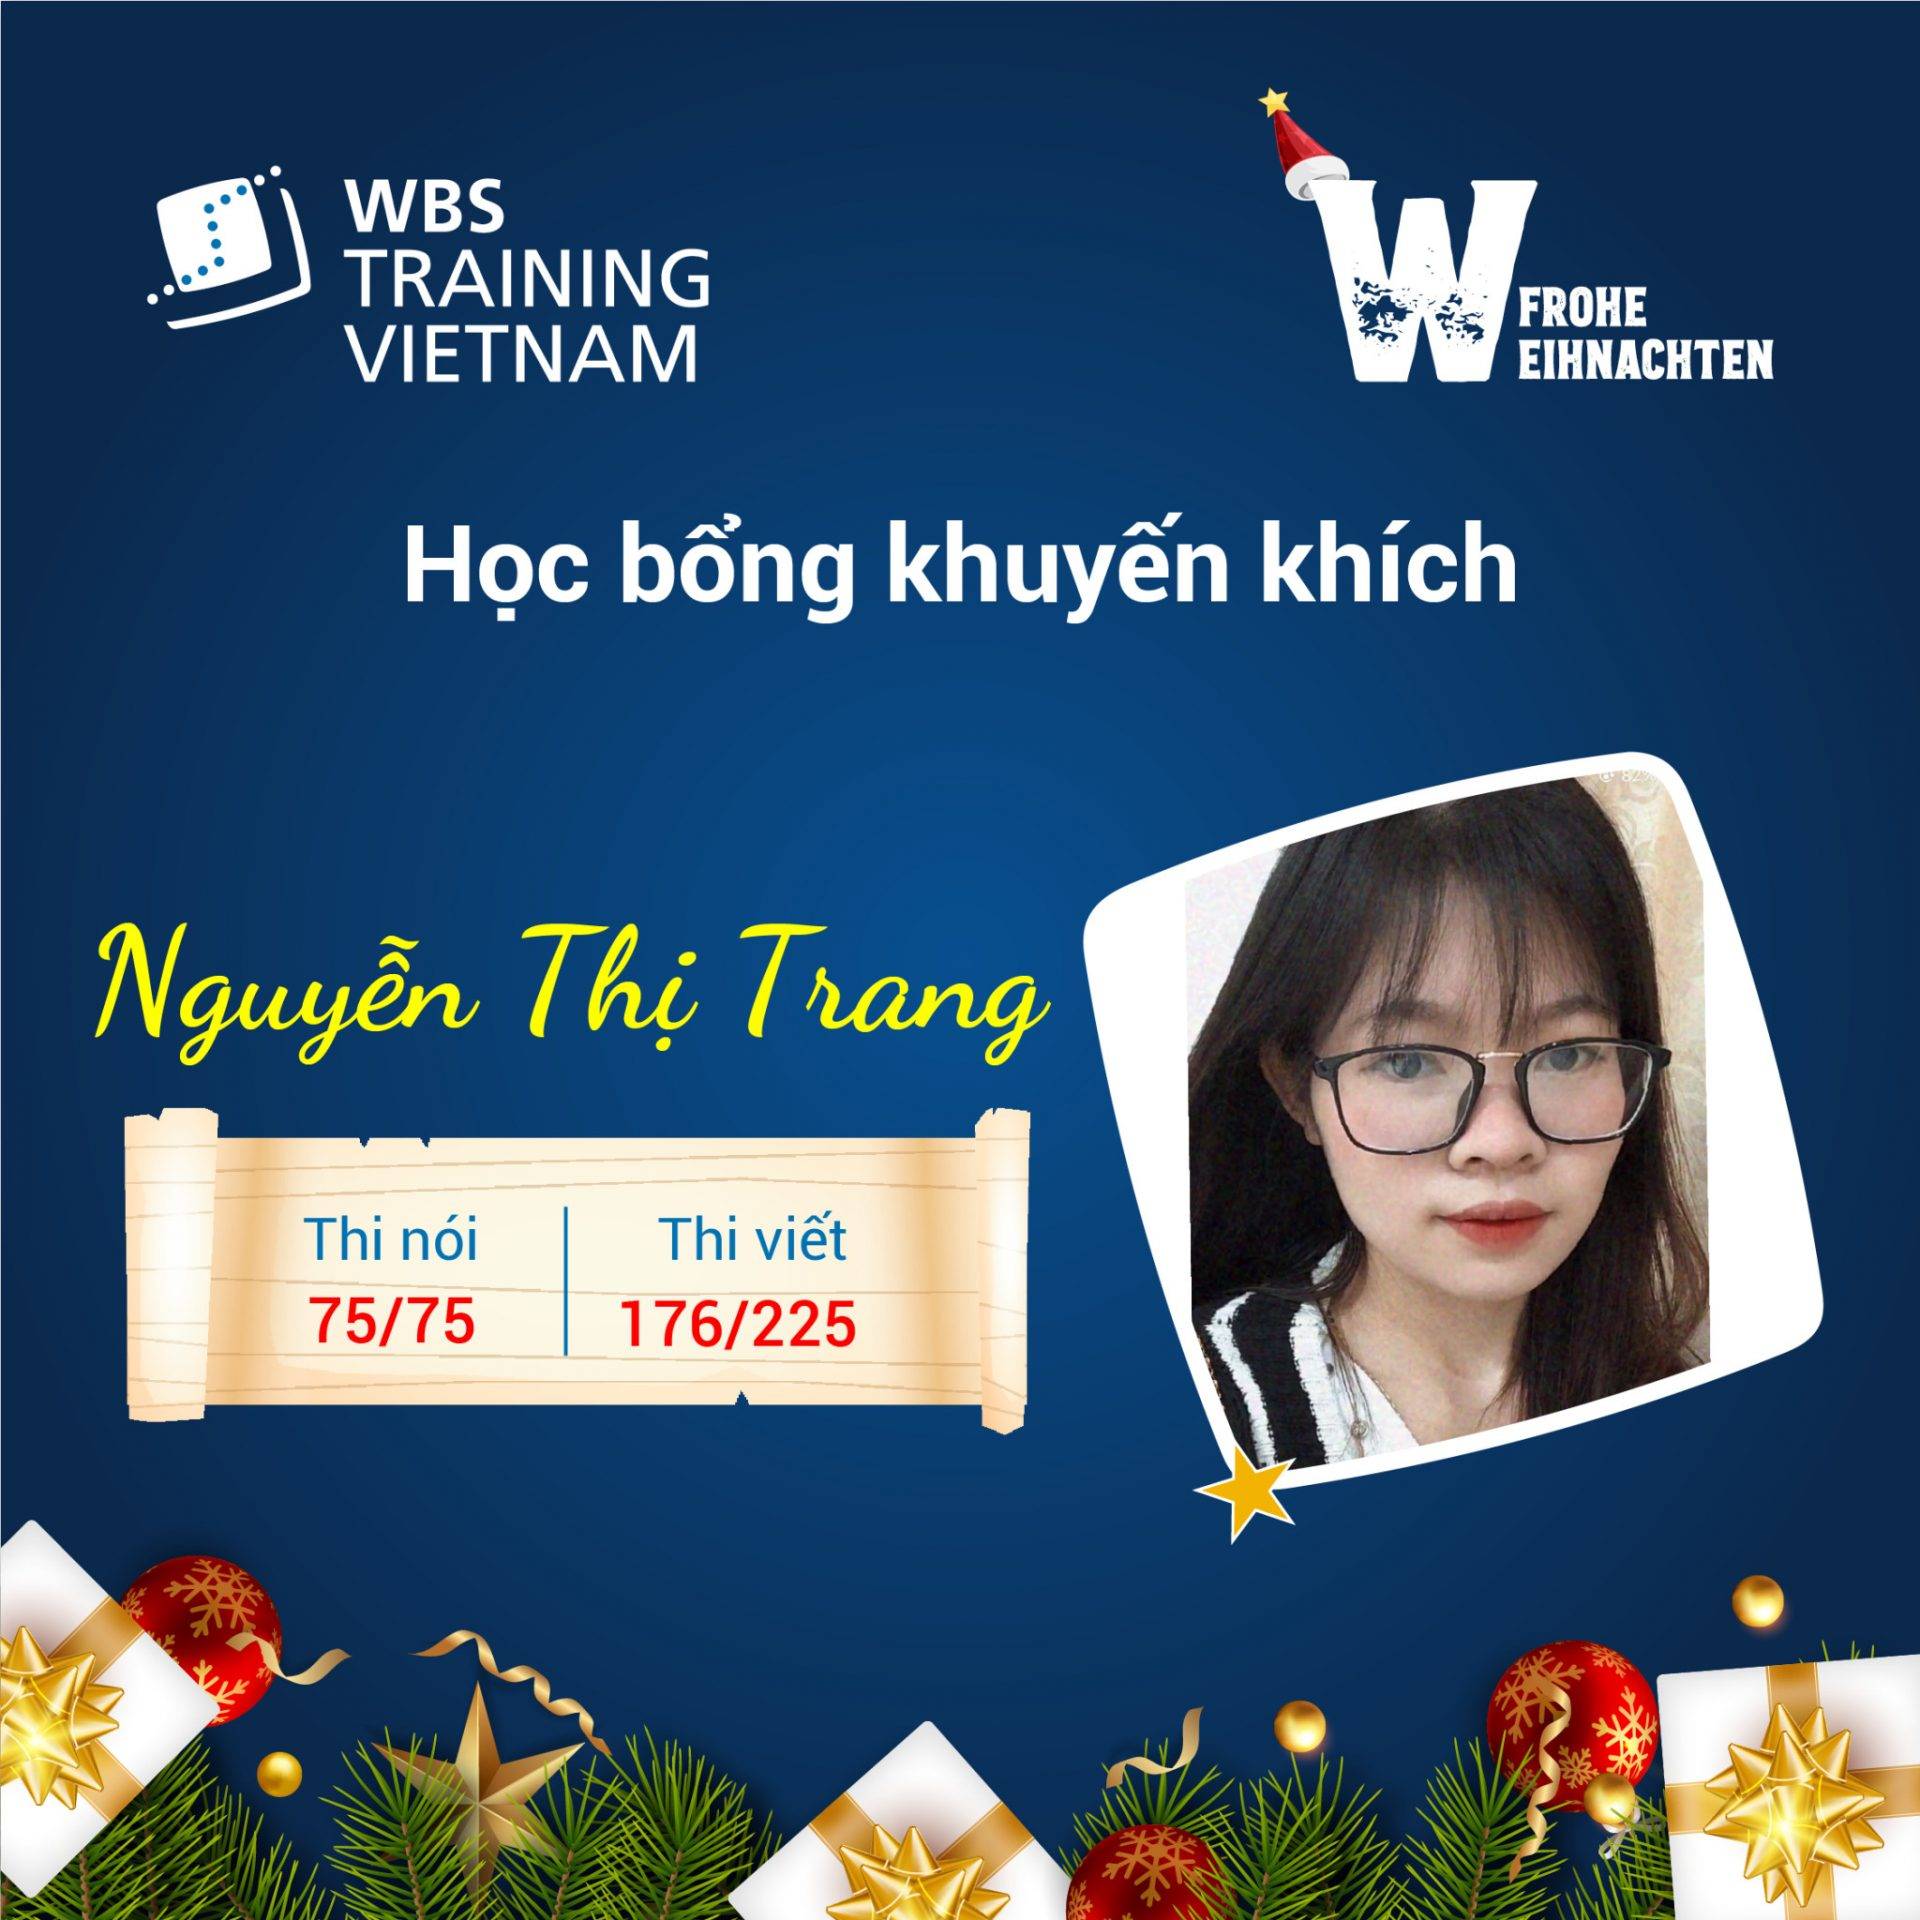 Học viên Nguyễn Thị Trang đỗ bằng B1 sau khoảng thời gian học tập tại WBS